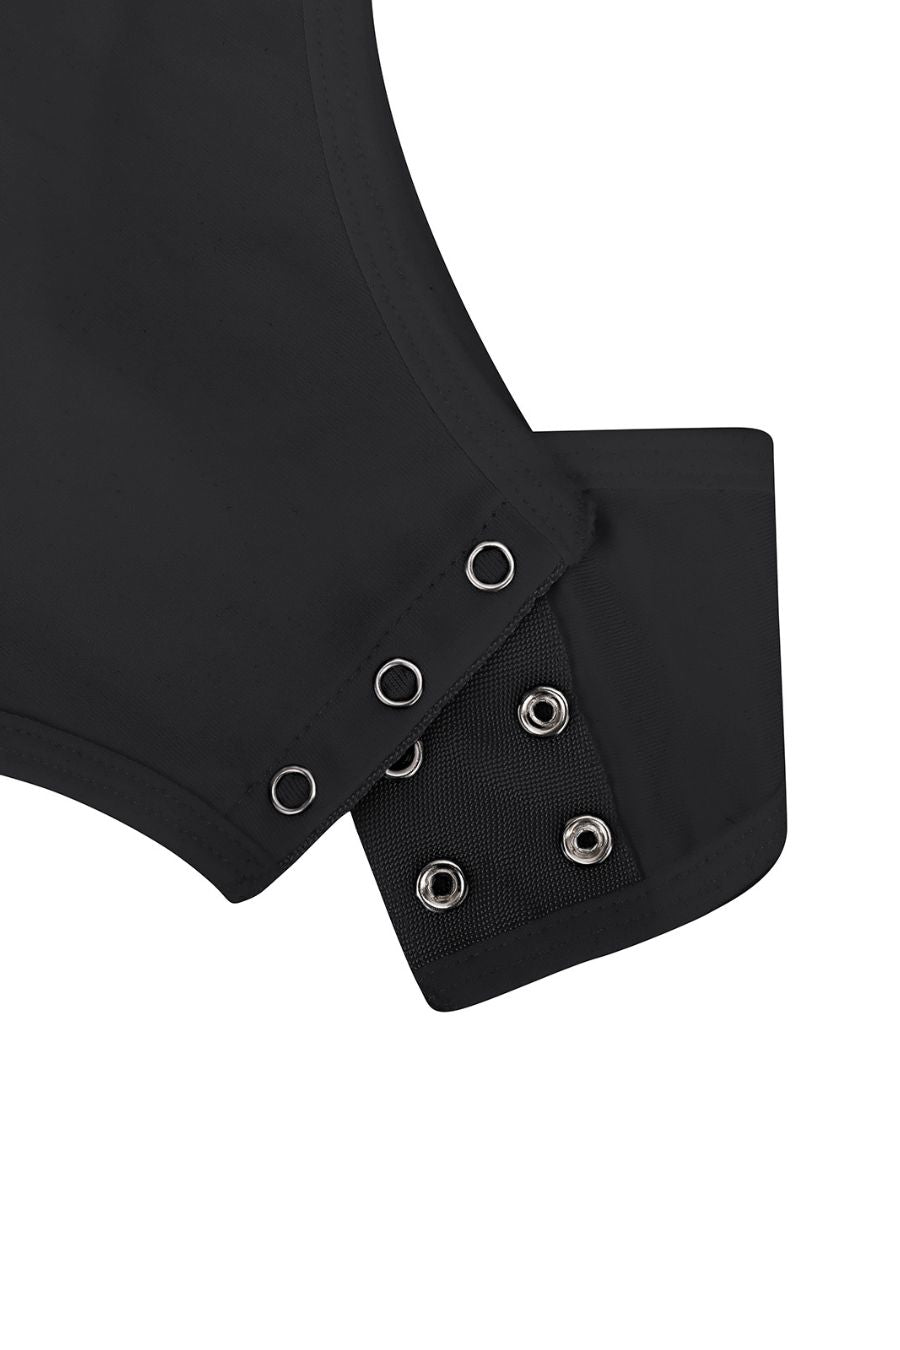 Classique Shaping Bodysuit - Black Contour Clothing